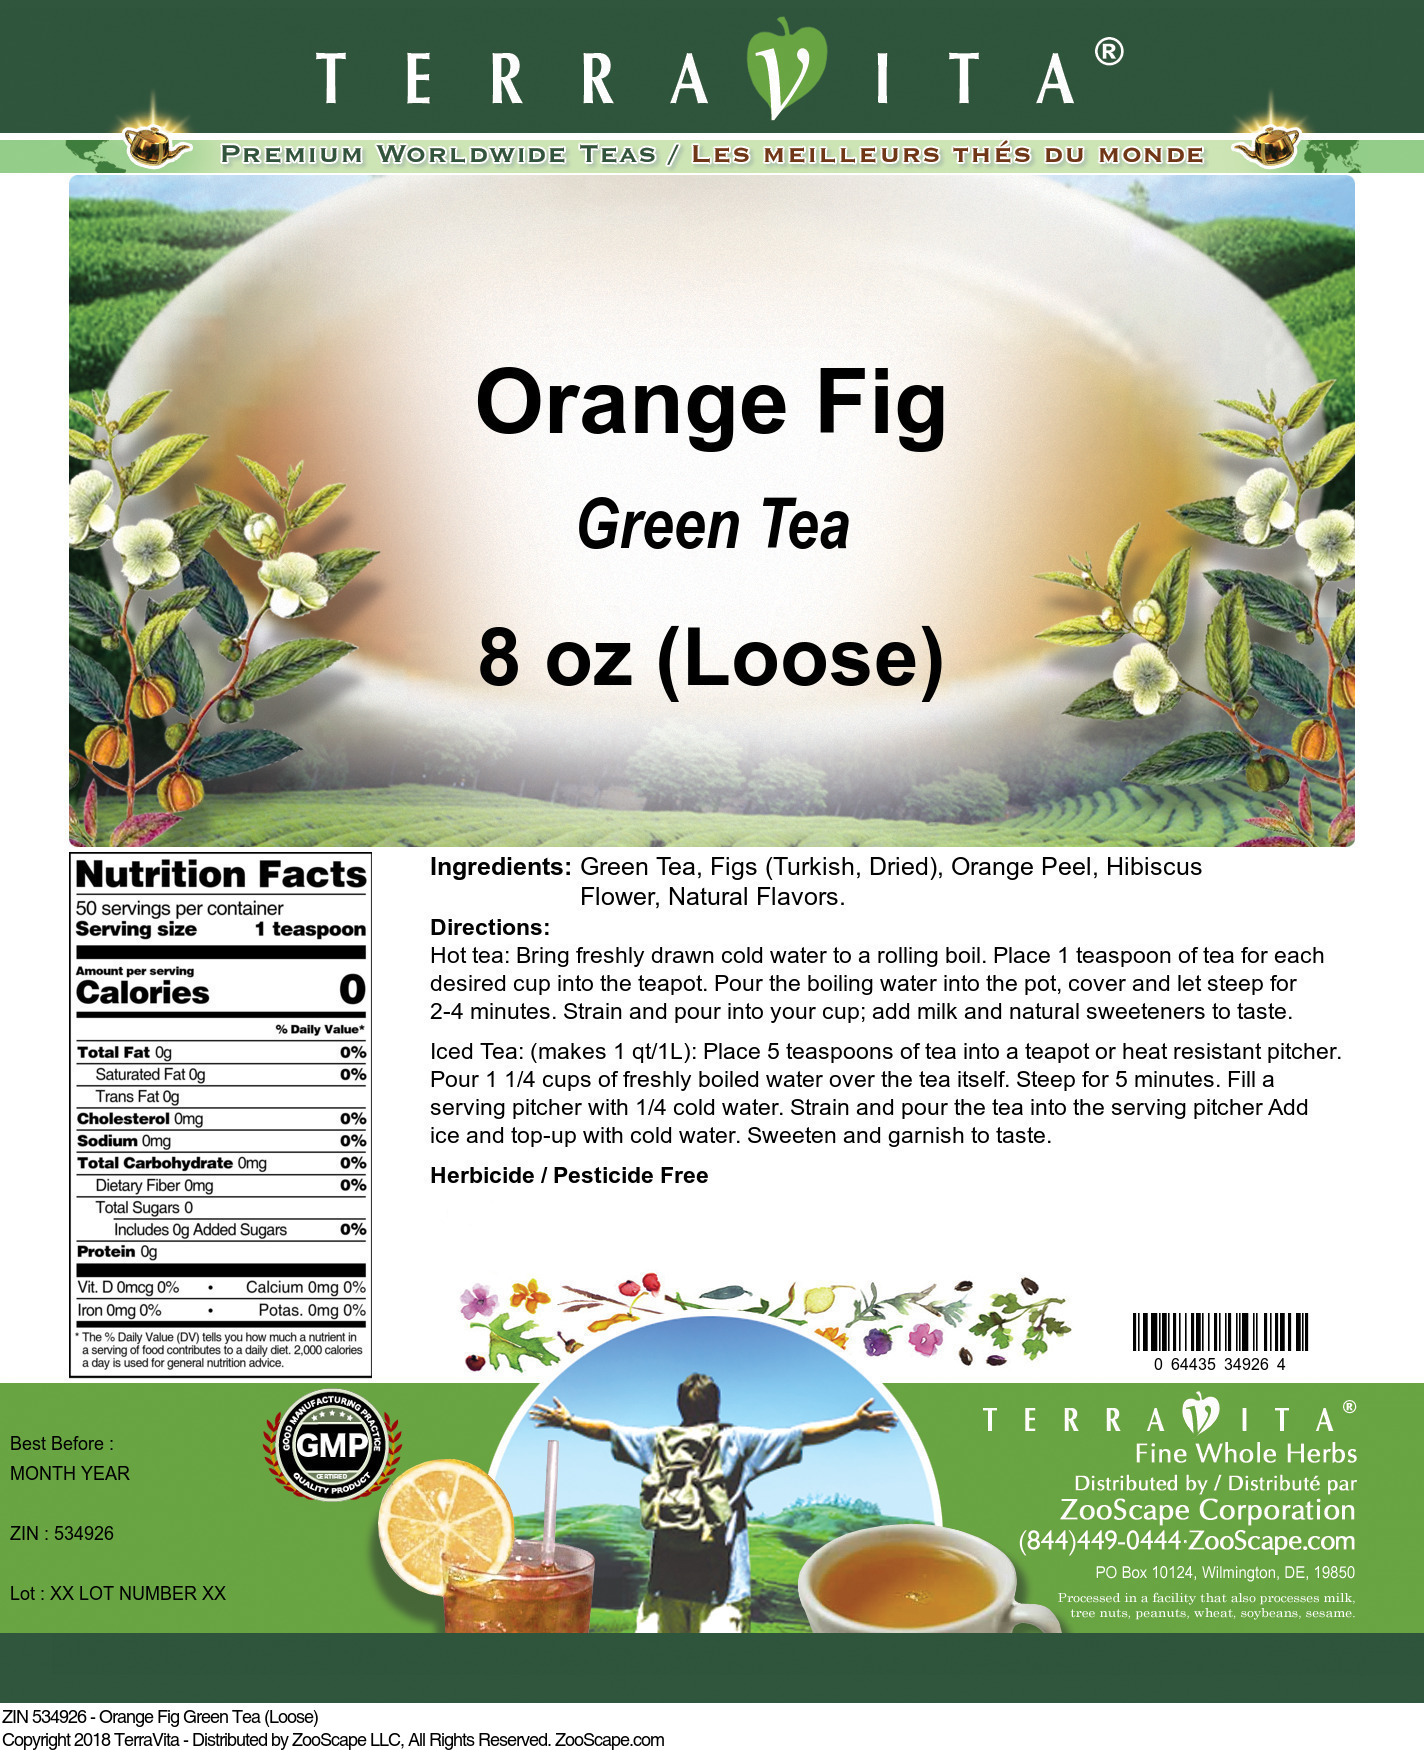 Orange Fig Green Tea (Loose) - Label